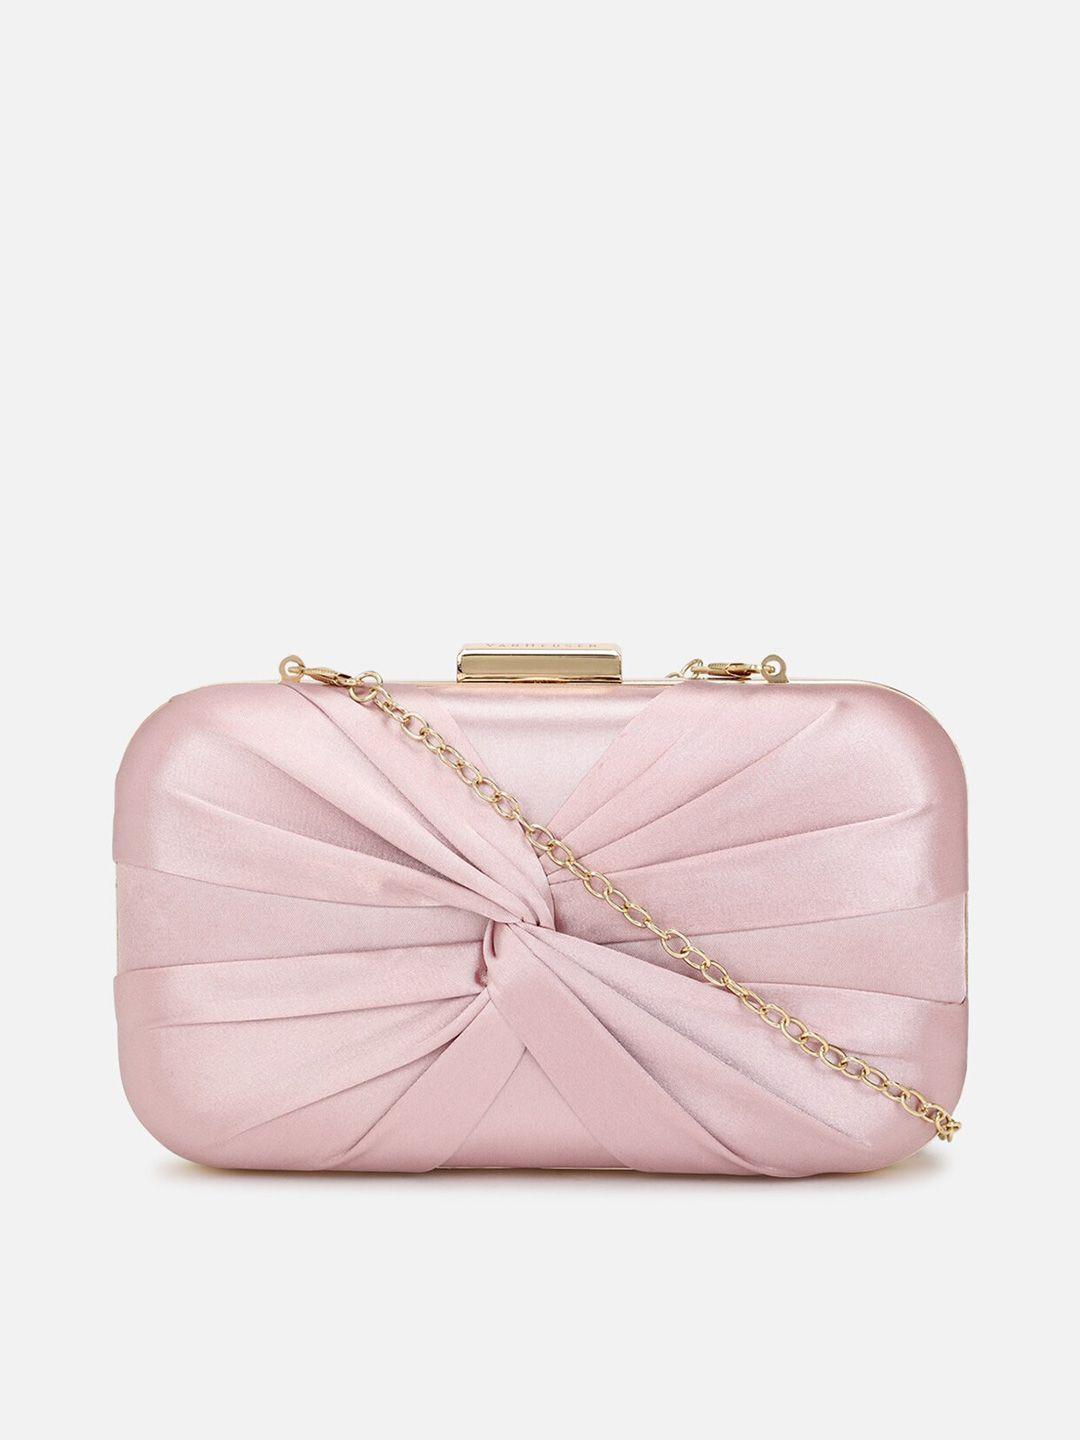 van-heusen-woman-pink-solid-box-clutch